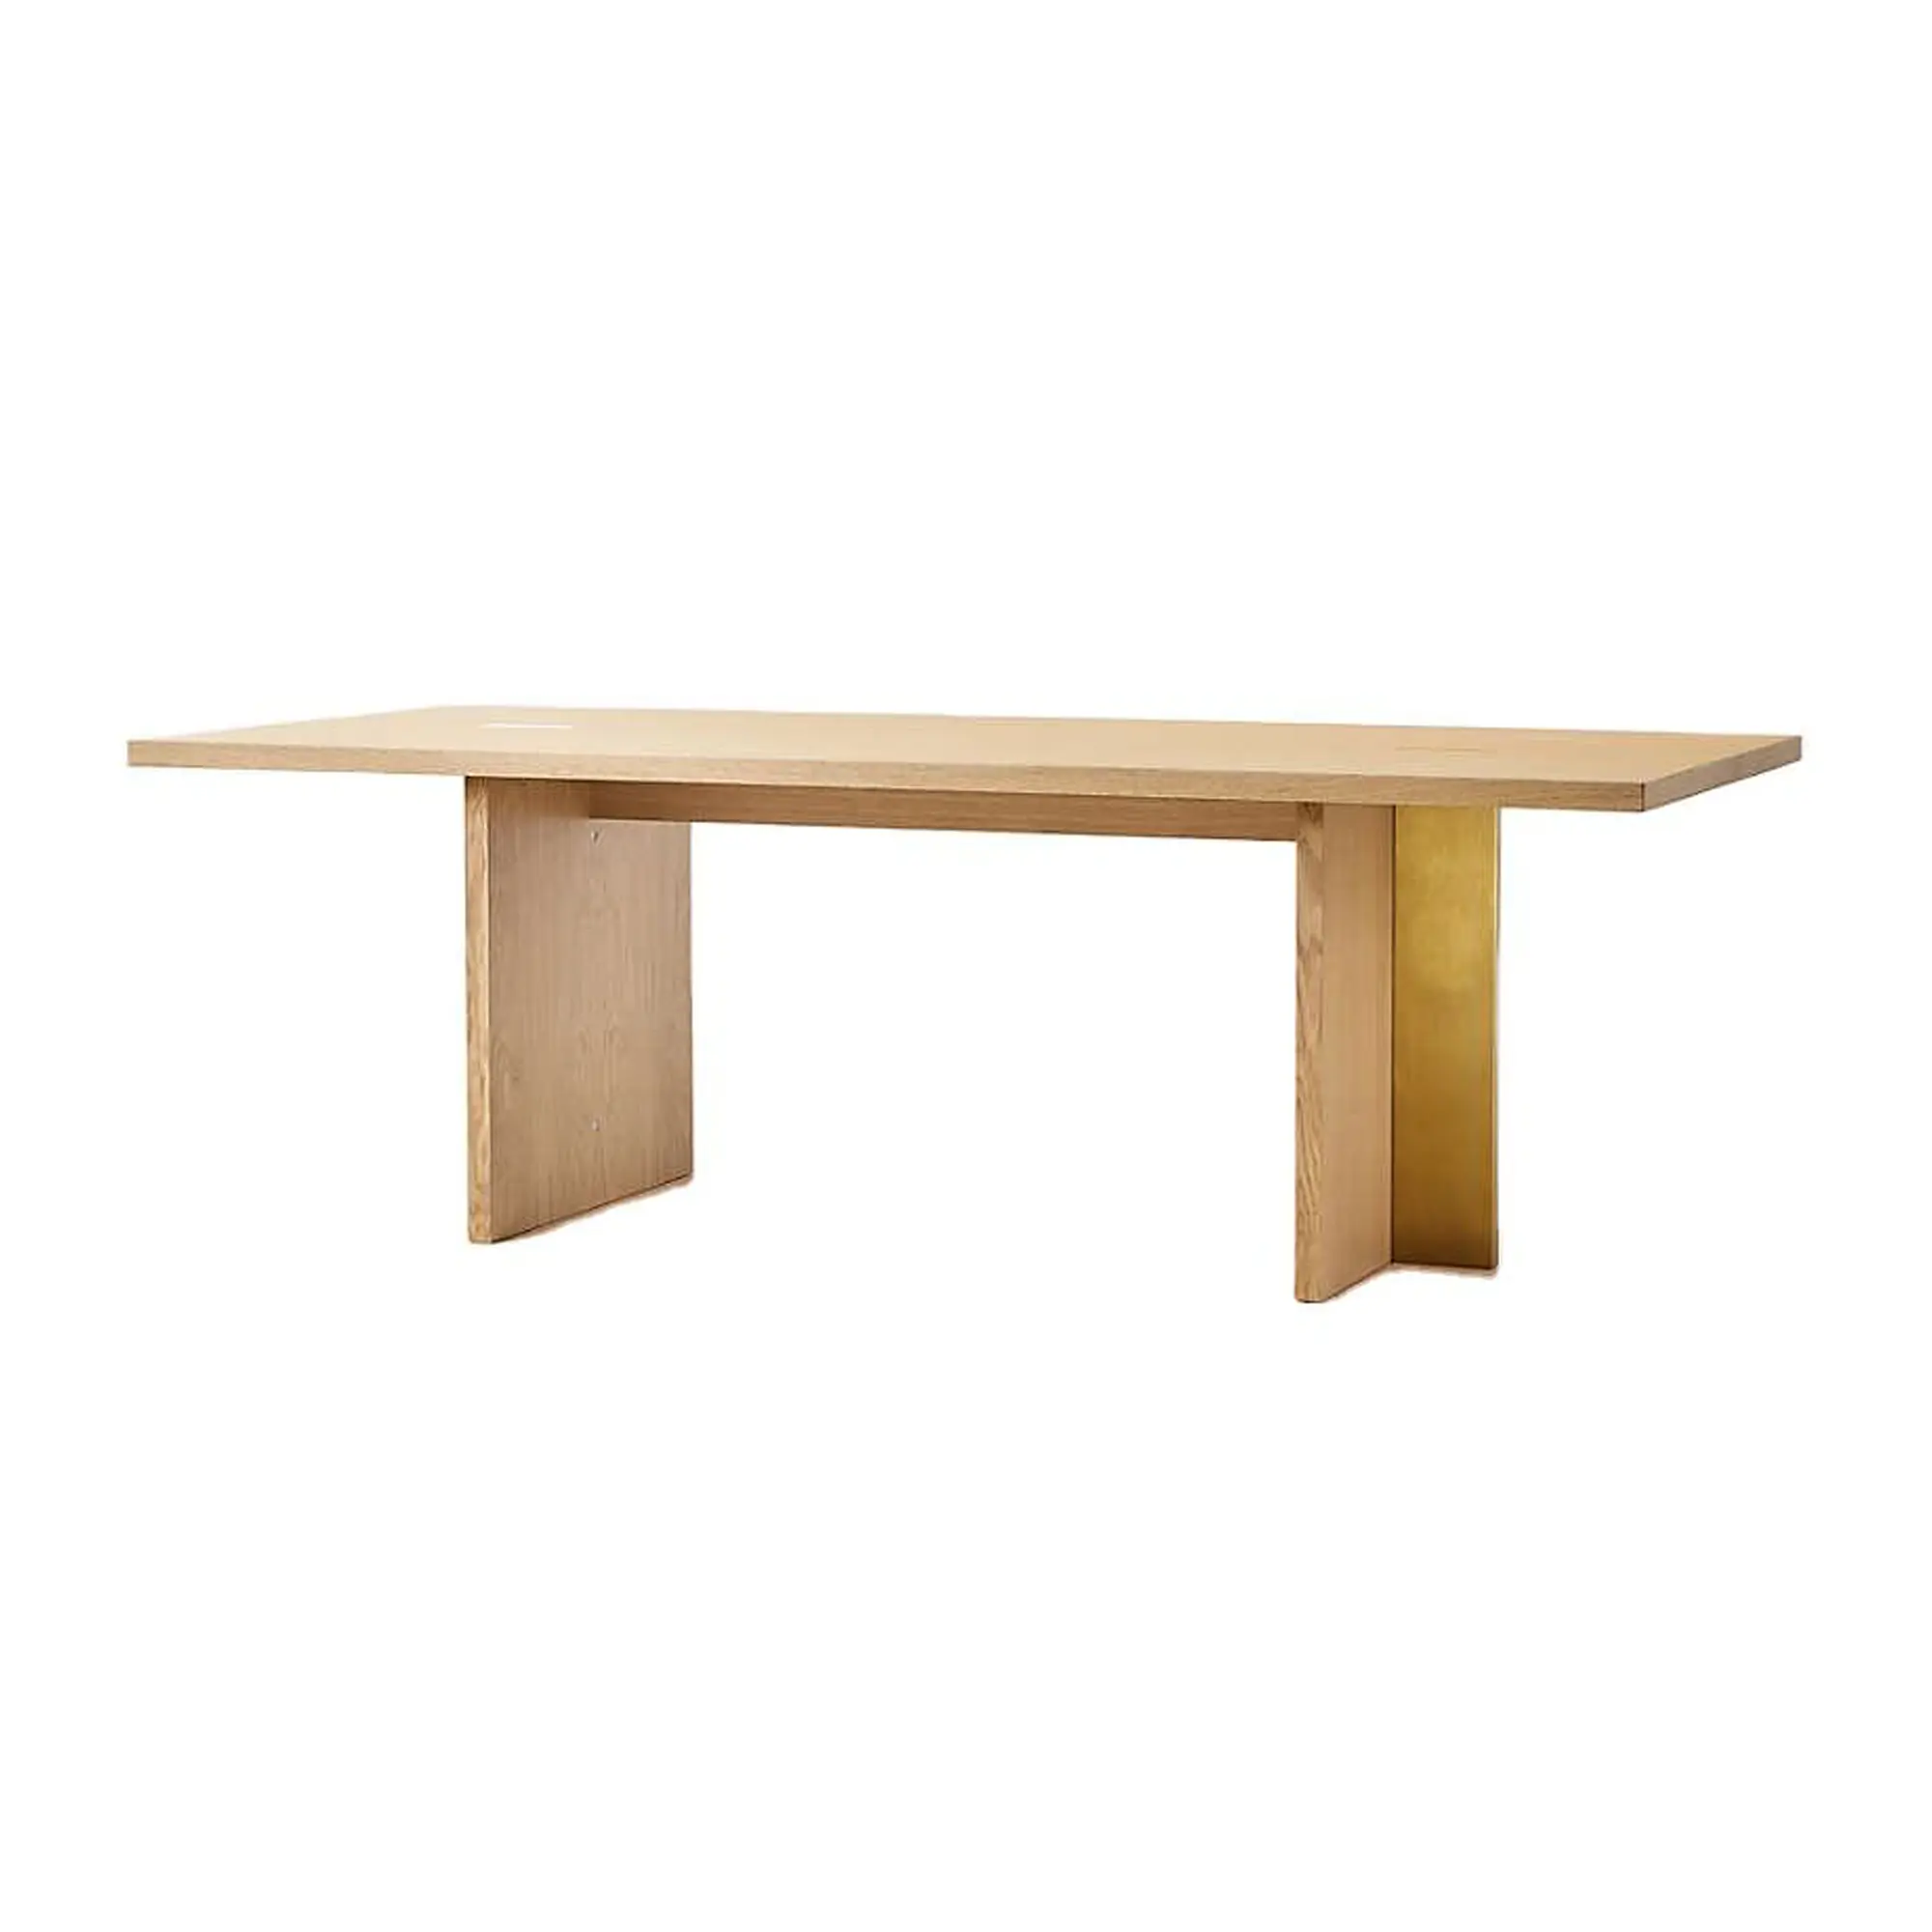 Table à manger moderne en bois de 10 places, en chêne naturel, avec pieds en métal doré, pour salle à manger